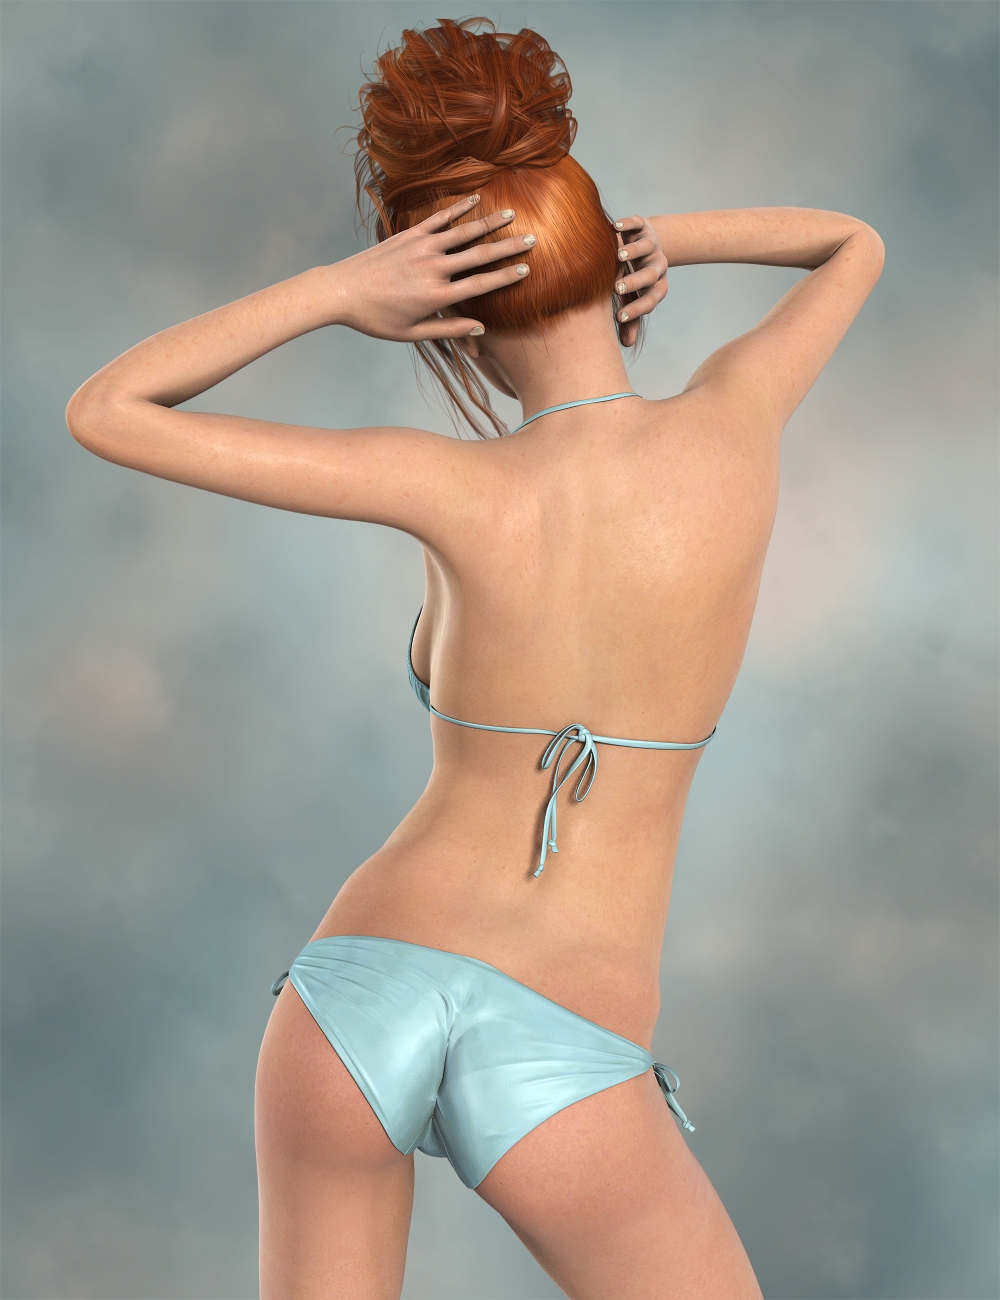 LY Aileen by: Lyoness, 3D Models by Daz 3D